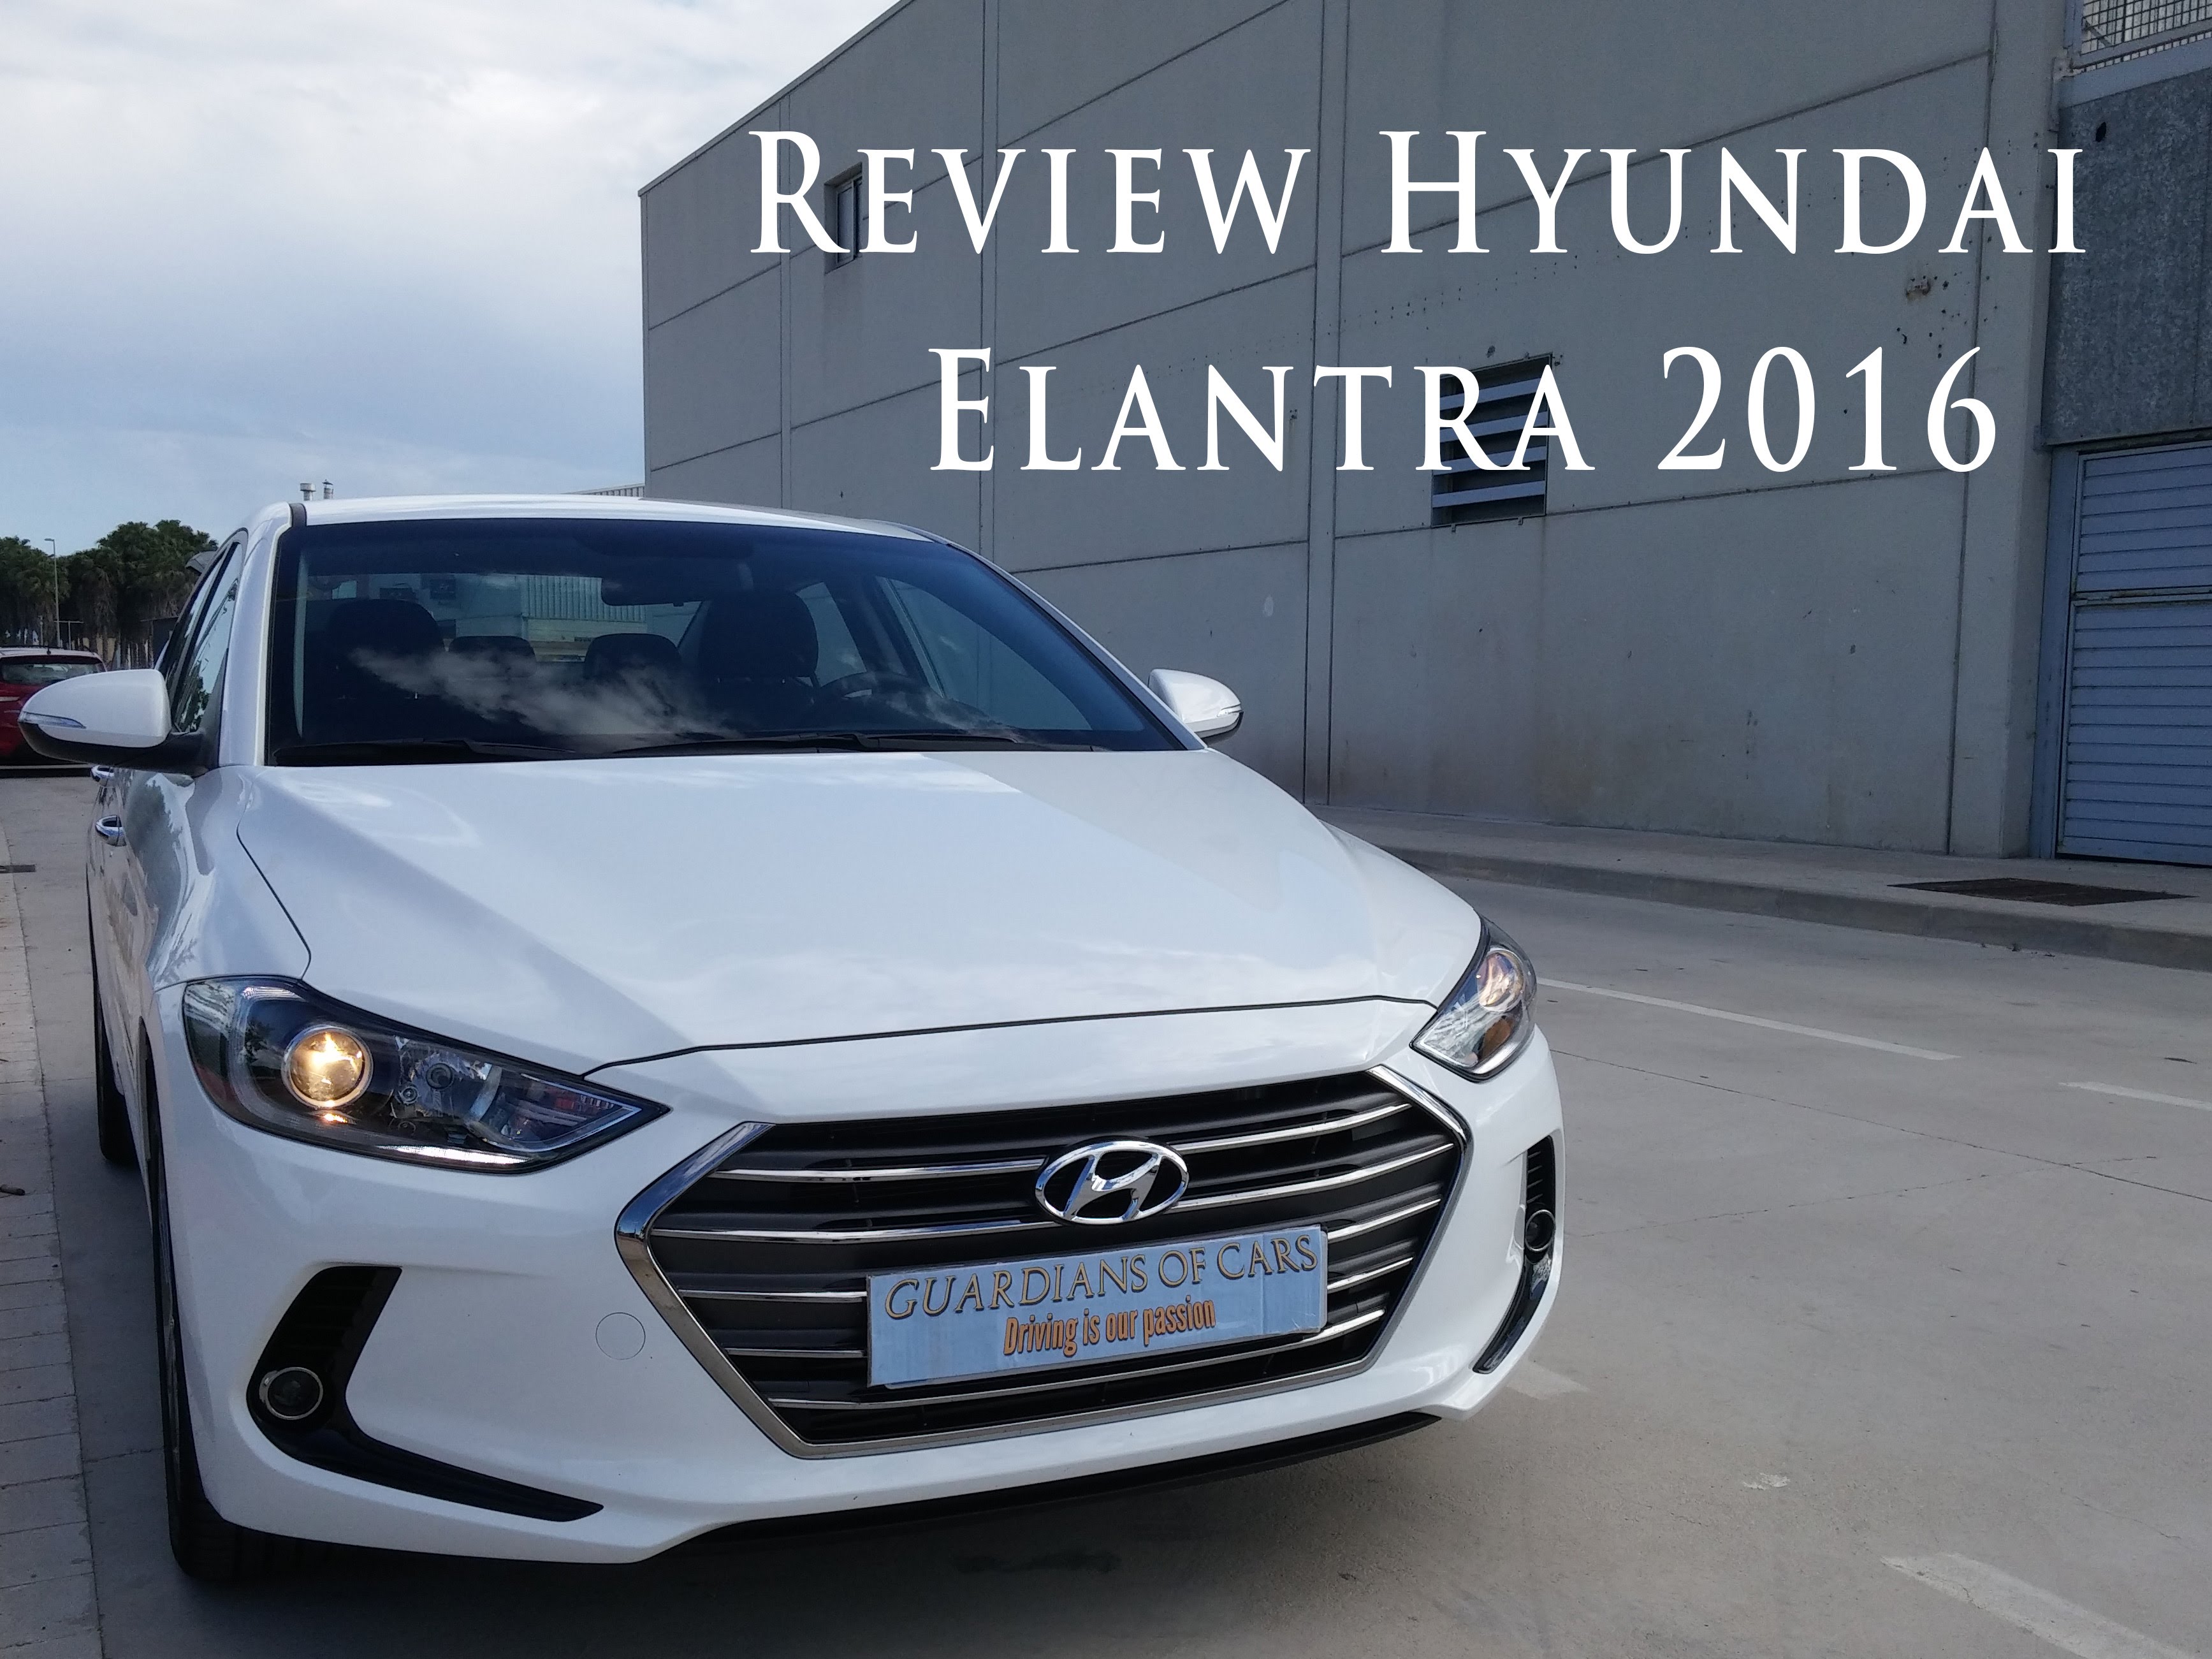 Review Hyundai Elantra Techno 2016 de Nil66